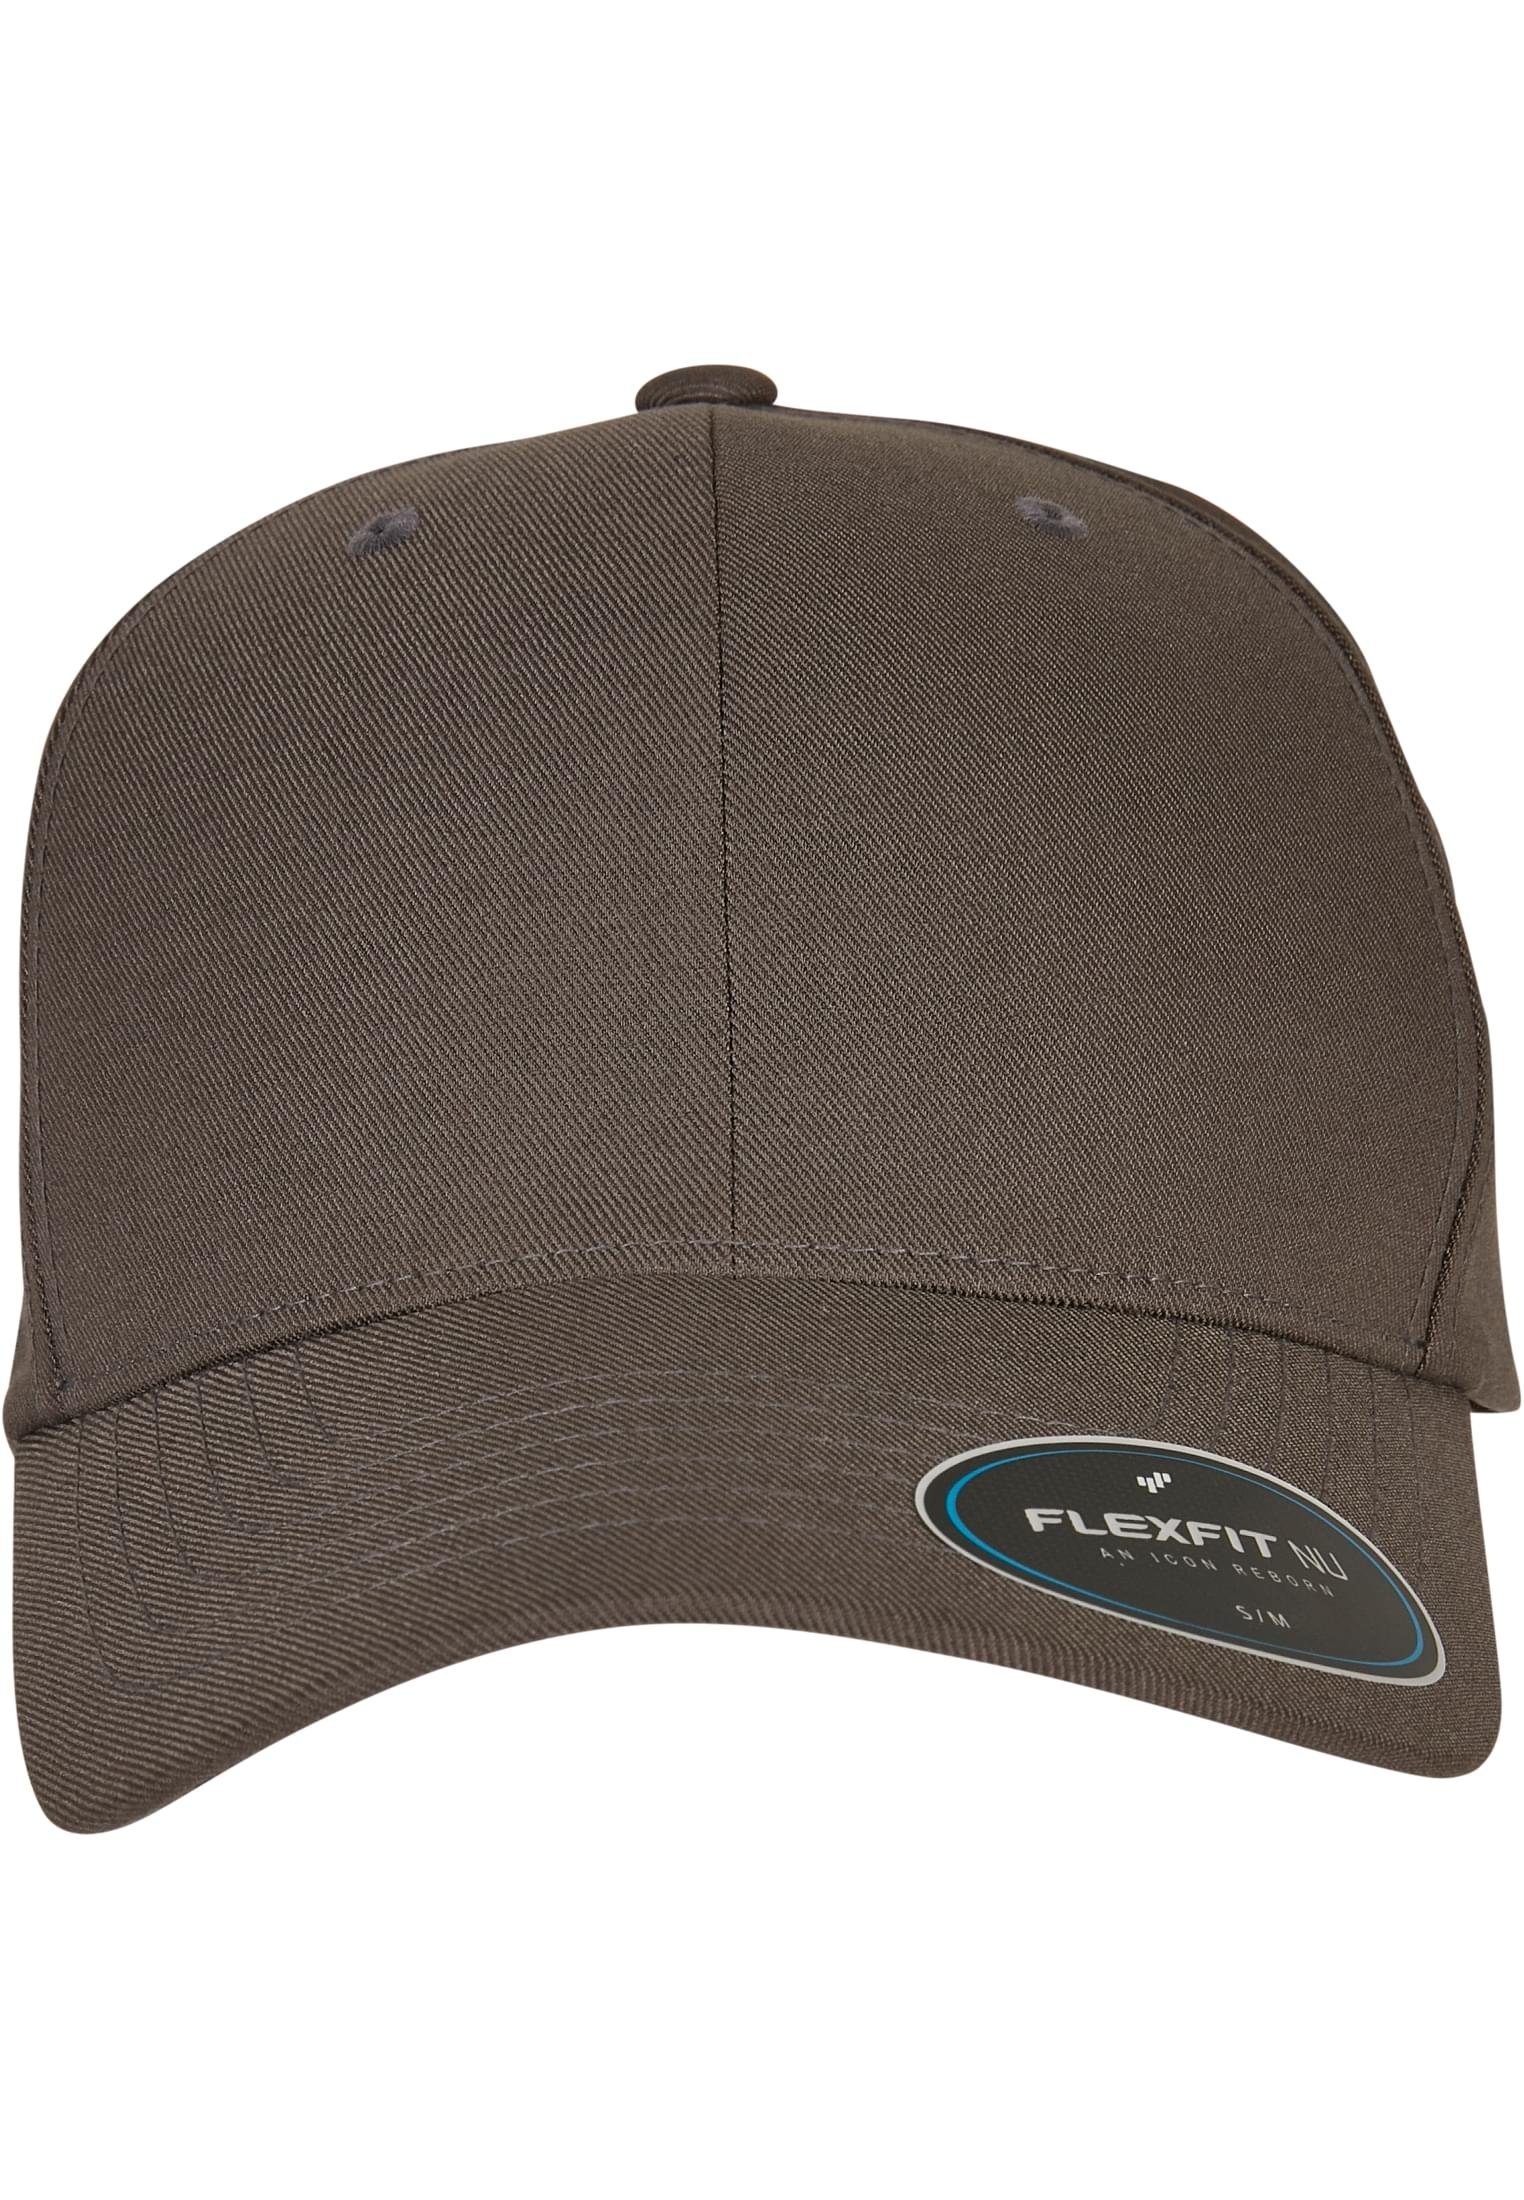 Verkaufsberater Flexfit Flex CAP darkgrey NU® Cap FLEXFIT Accessoires